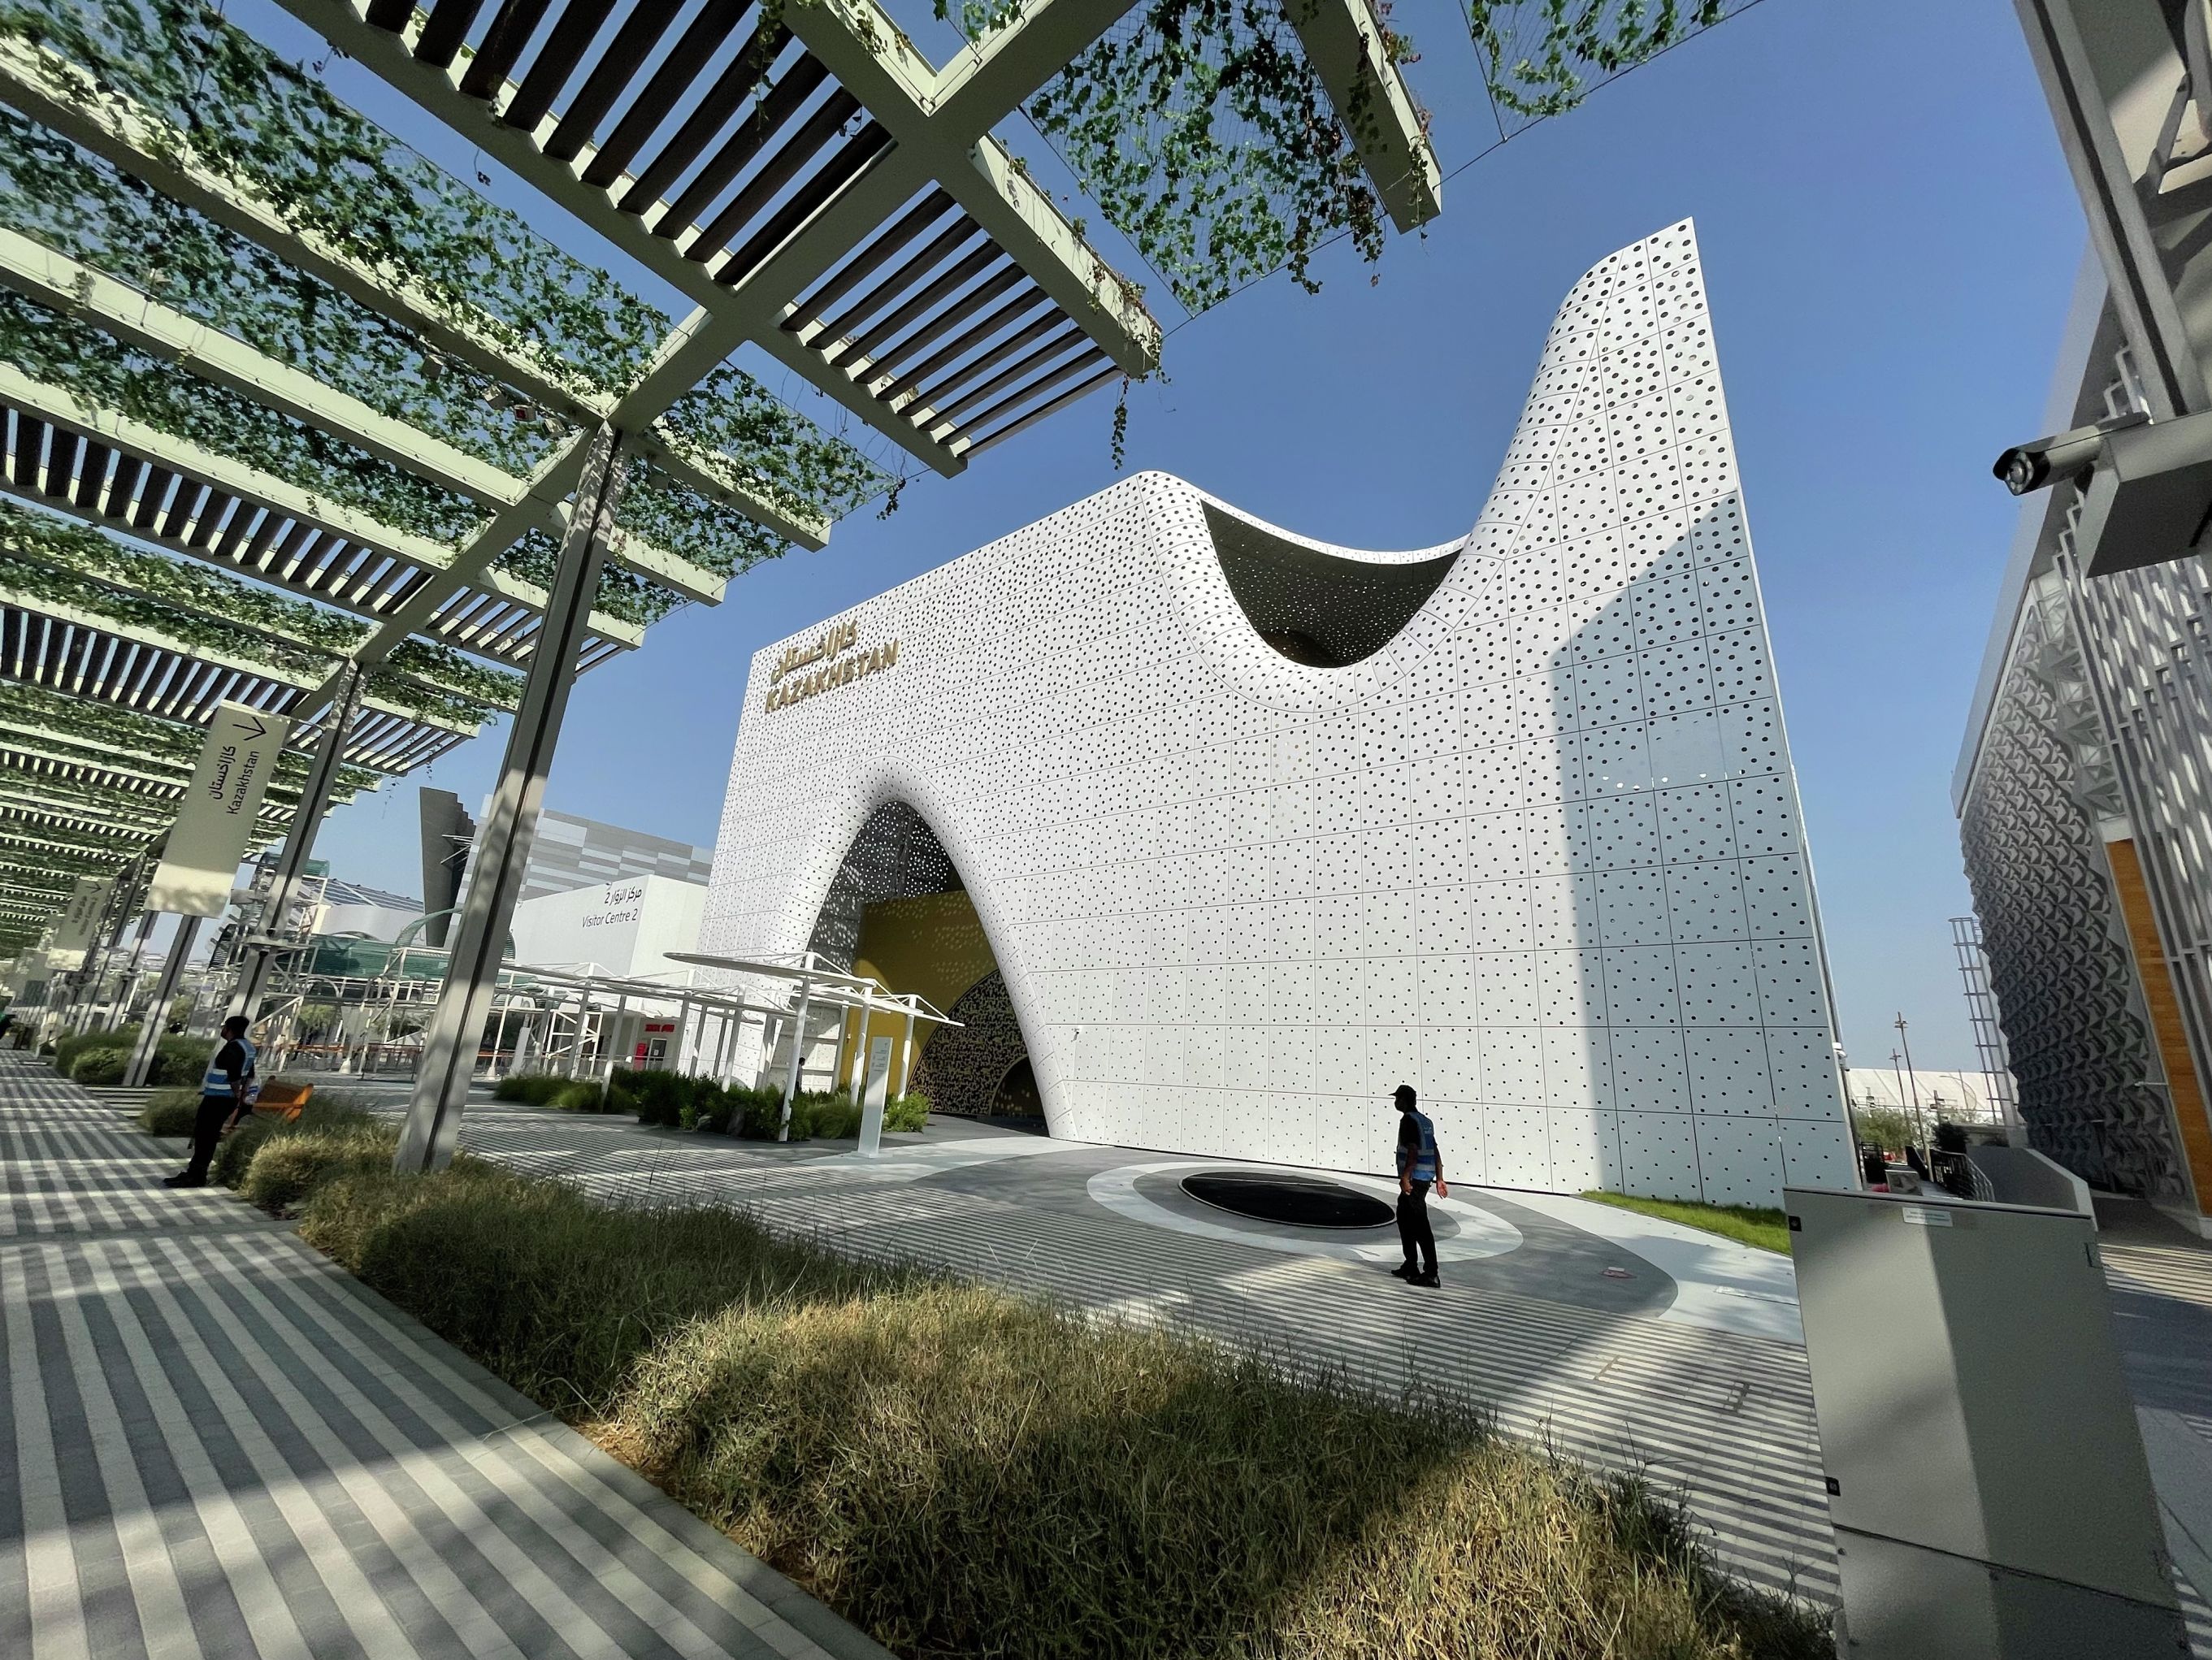 ЕХРО-2020 DUBAI: Қазақстан павильоны салтанатты түрде ашылды